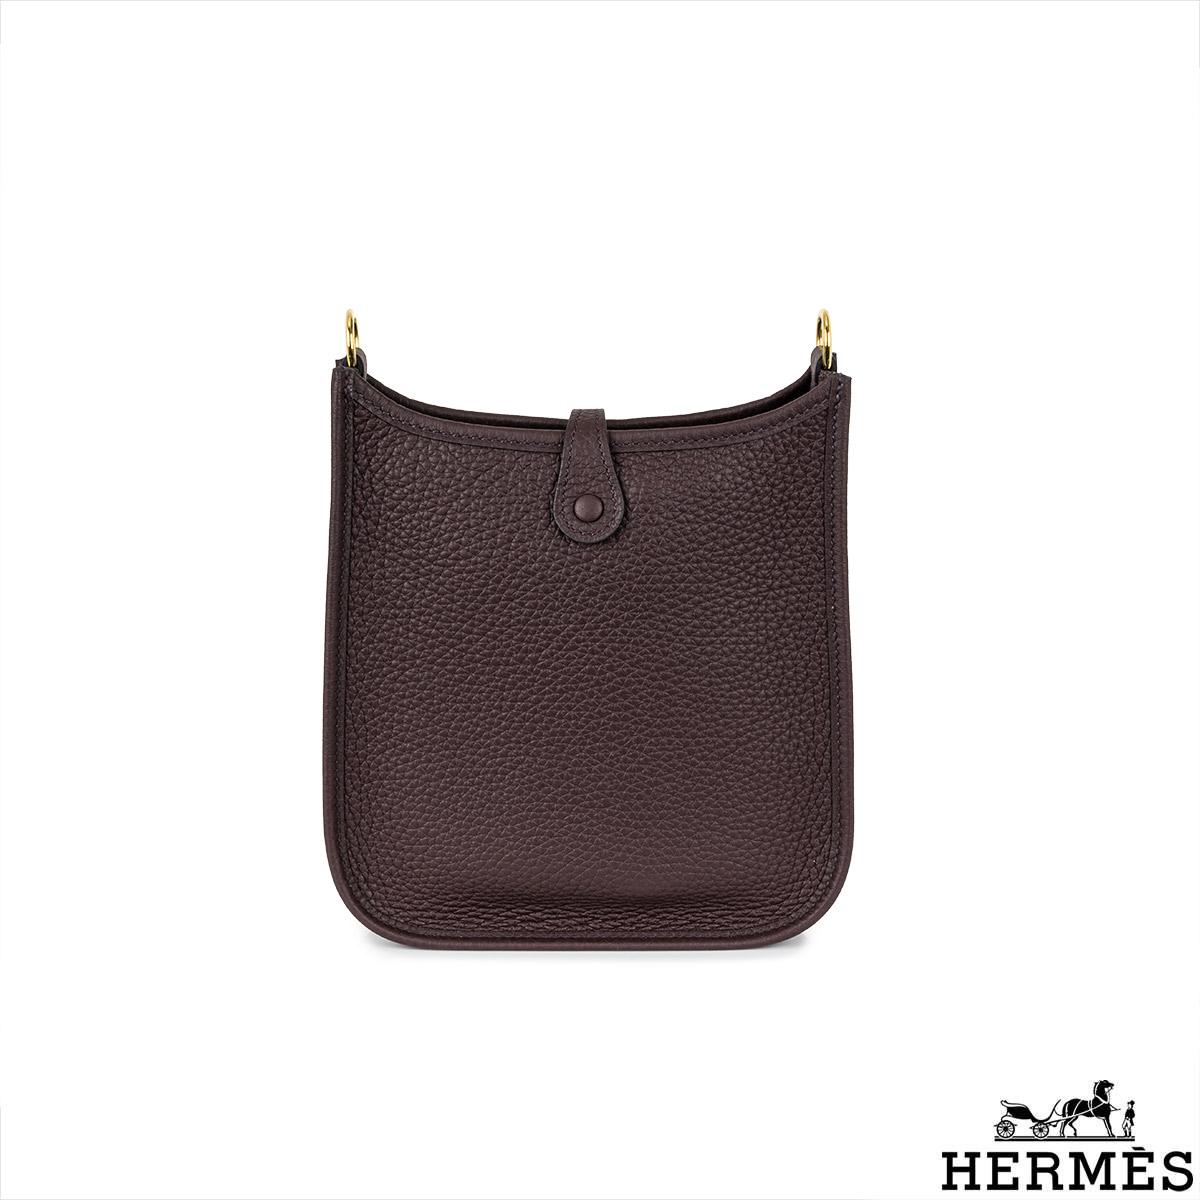 Un joli sac à main Hermès mini Evelyne. L'extérieur de ce sac Evelyne est fabriqué en cuir Clemence chocolat, complété par des ferrures dorées et des coutures ton sur ton. Il est doté d'un design en 